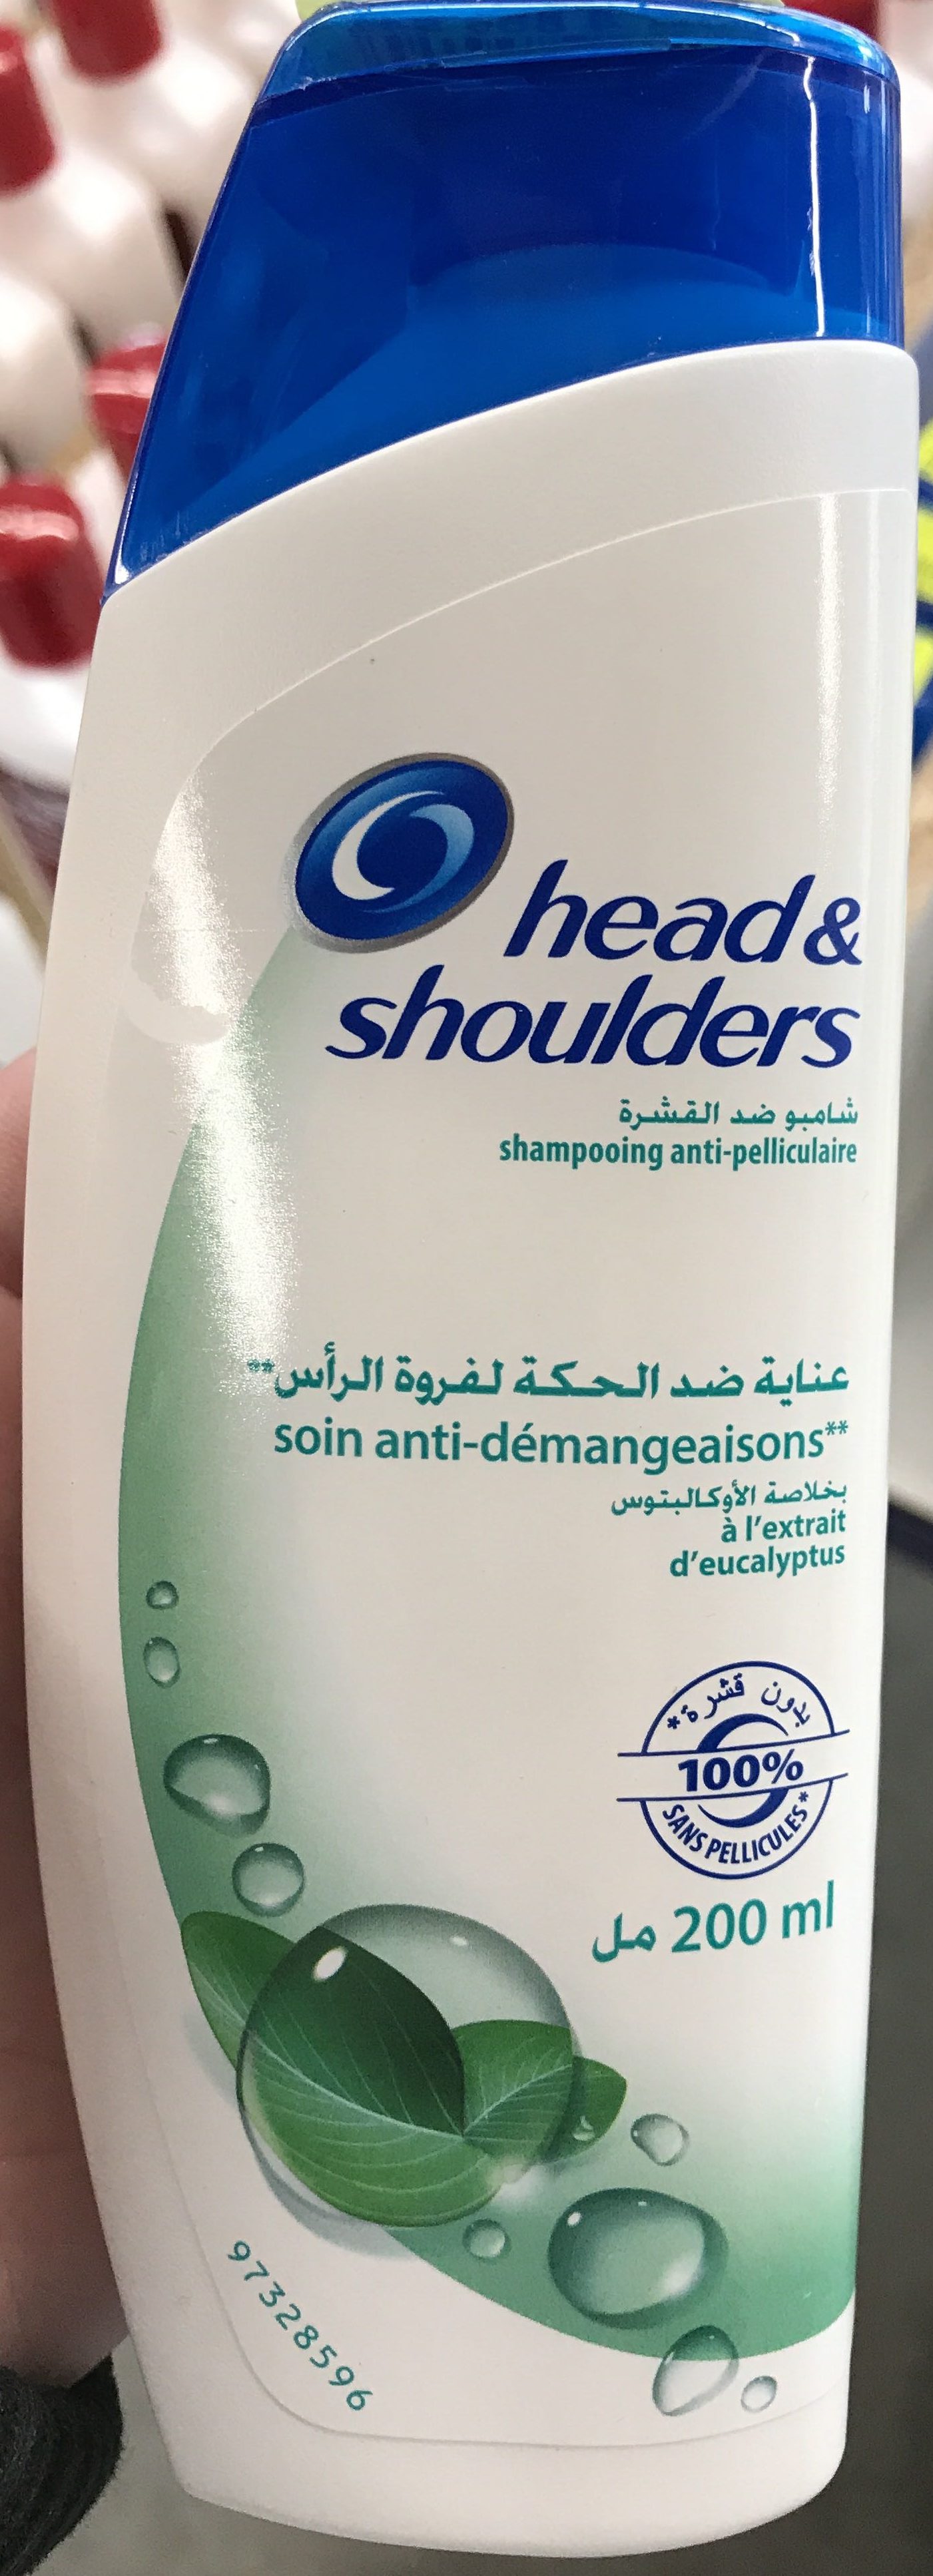 Shampooing anti-pelliculaire soin anti-démangeaisons à l'extrait d'eucalyptus - Product - fr